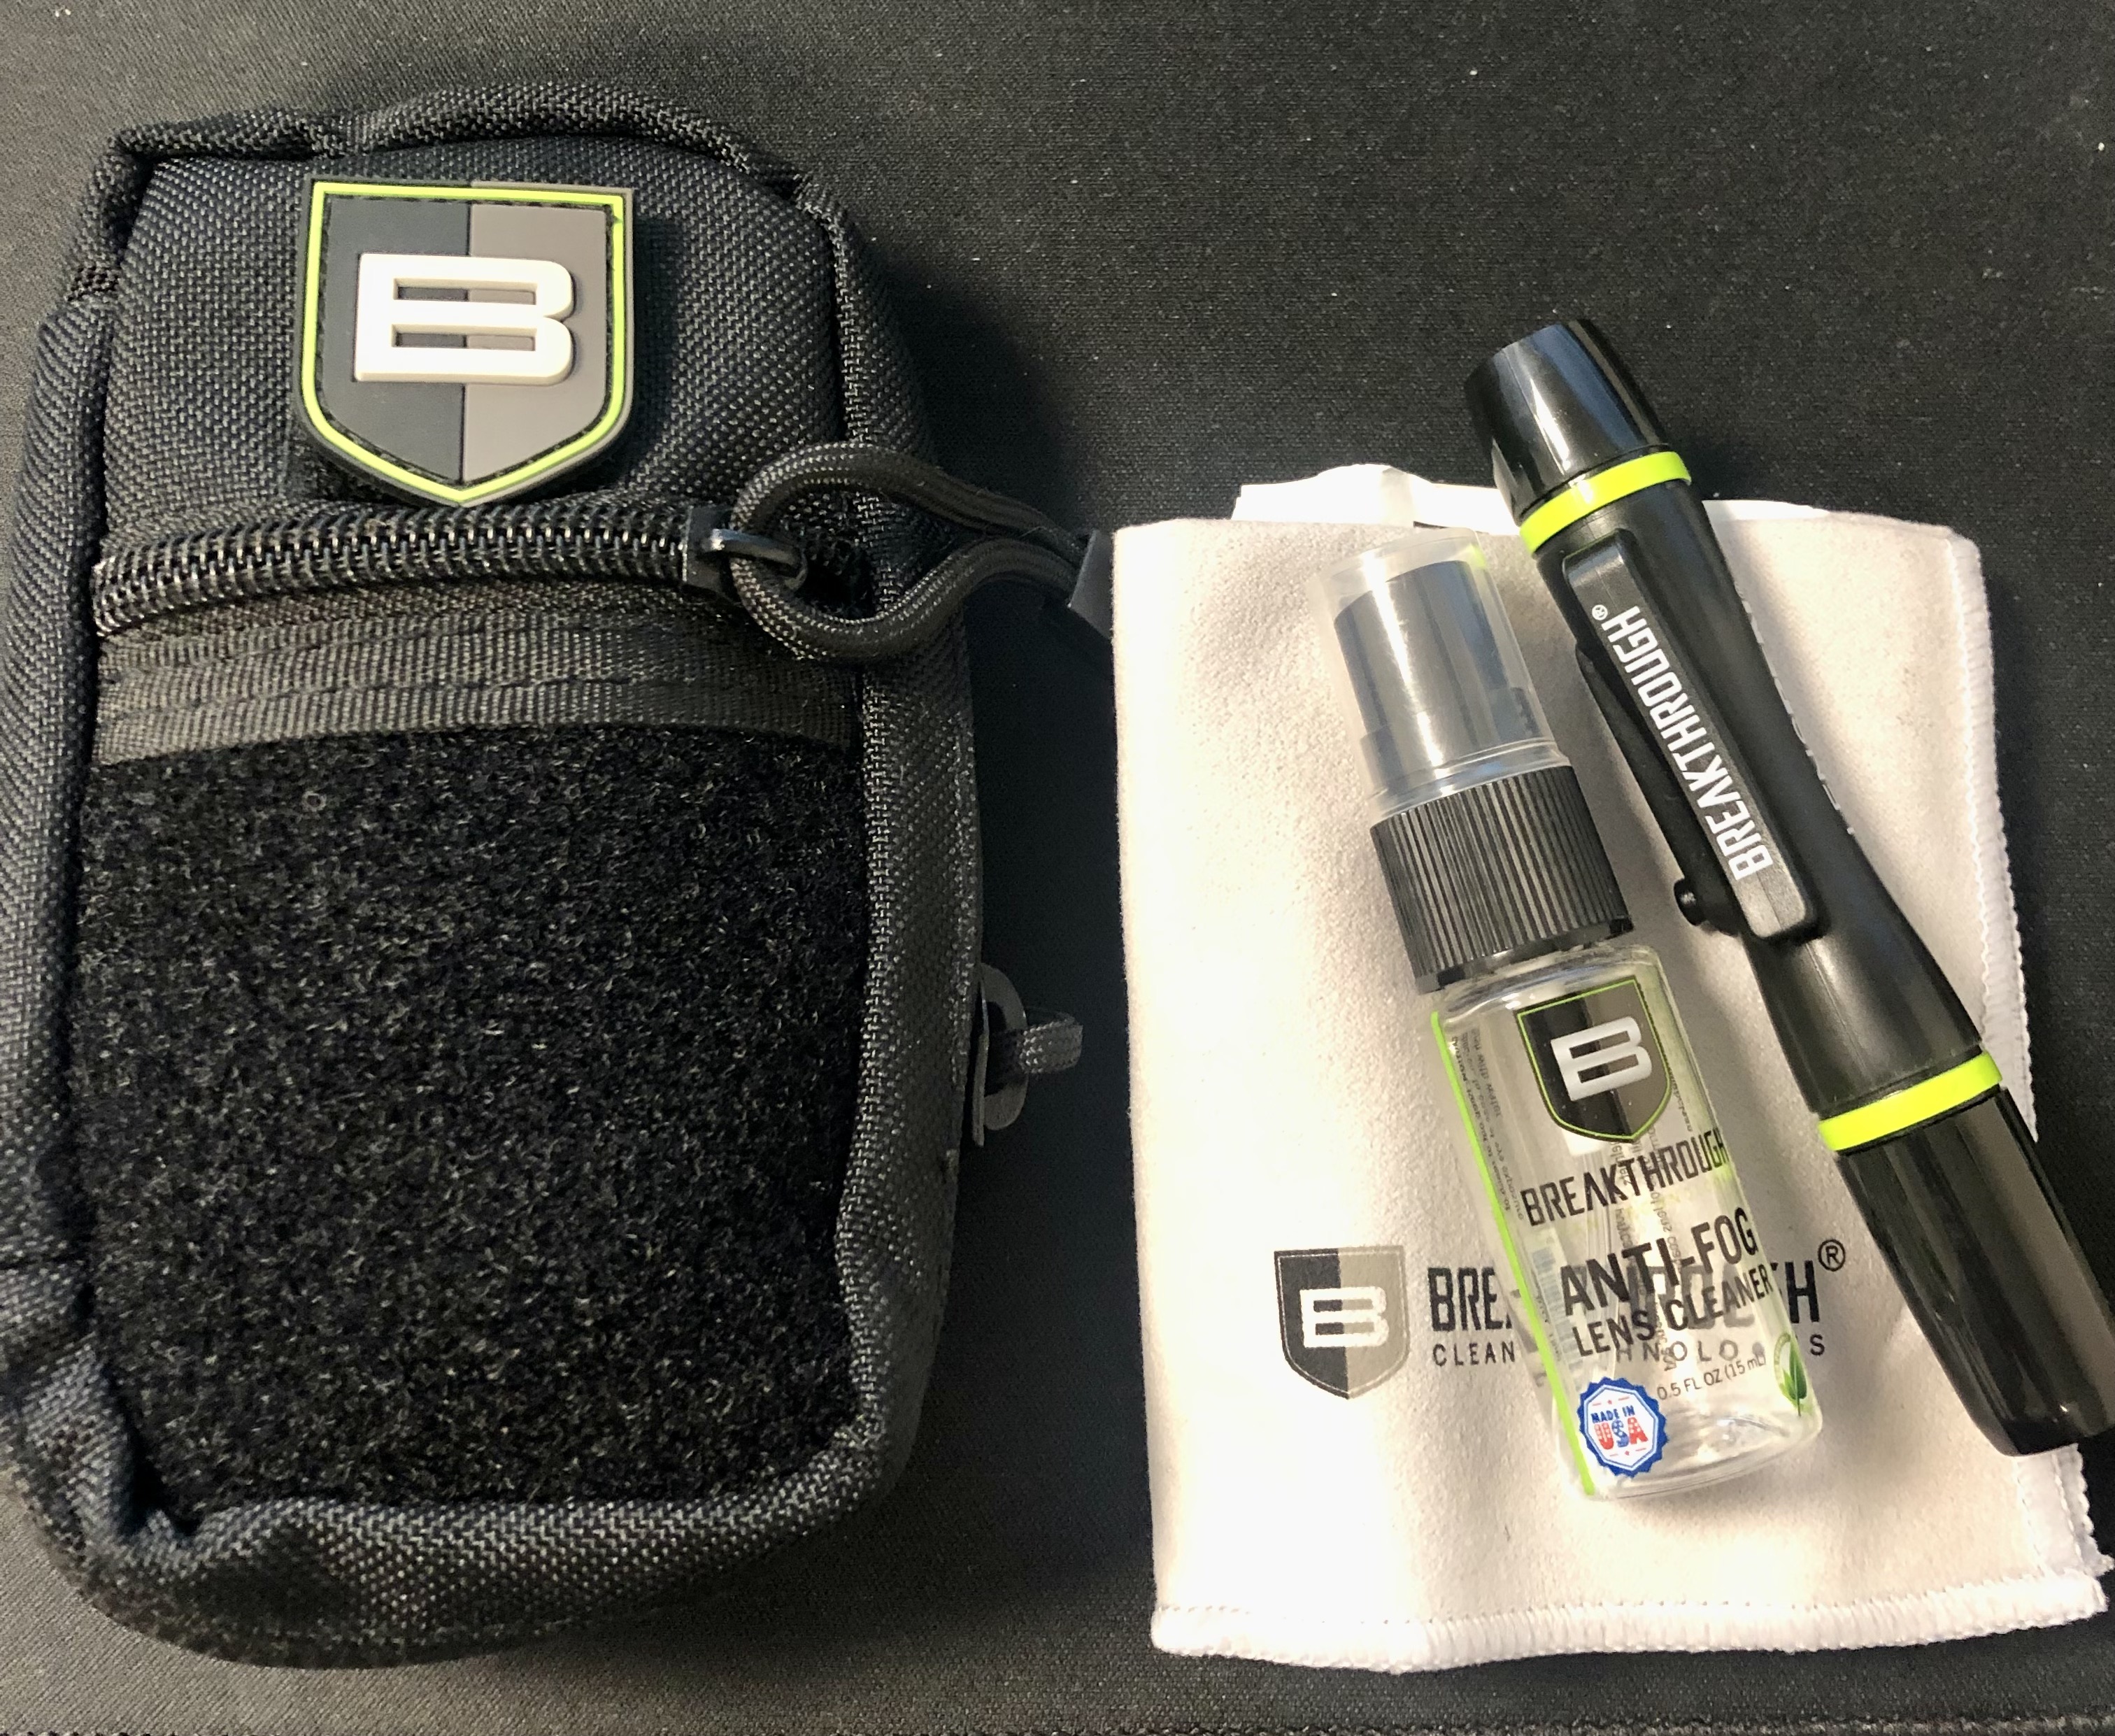 BT Lens Cleaner Kit